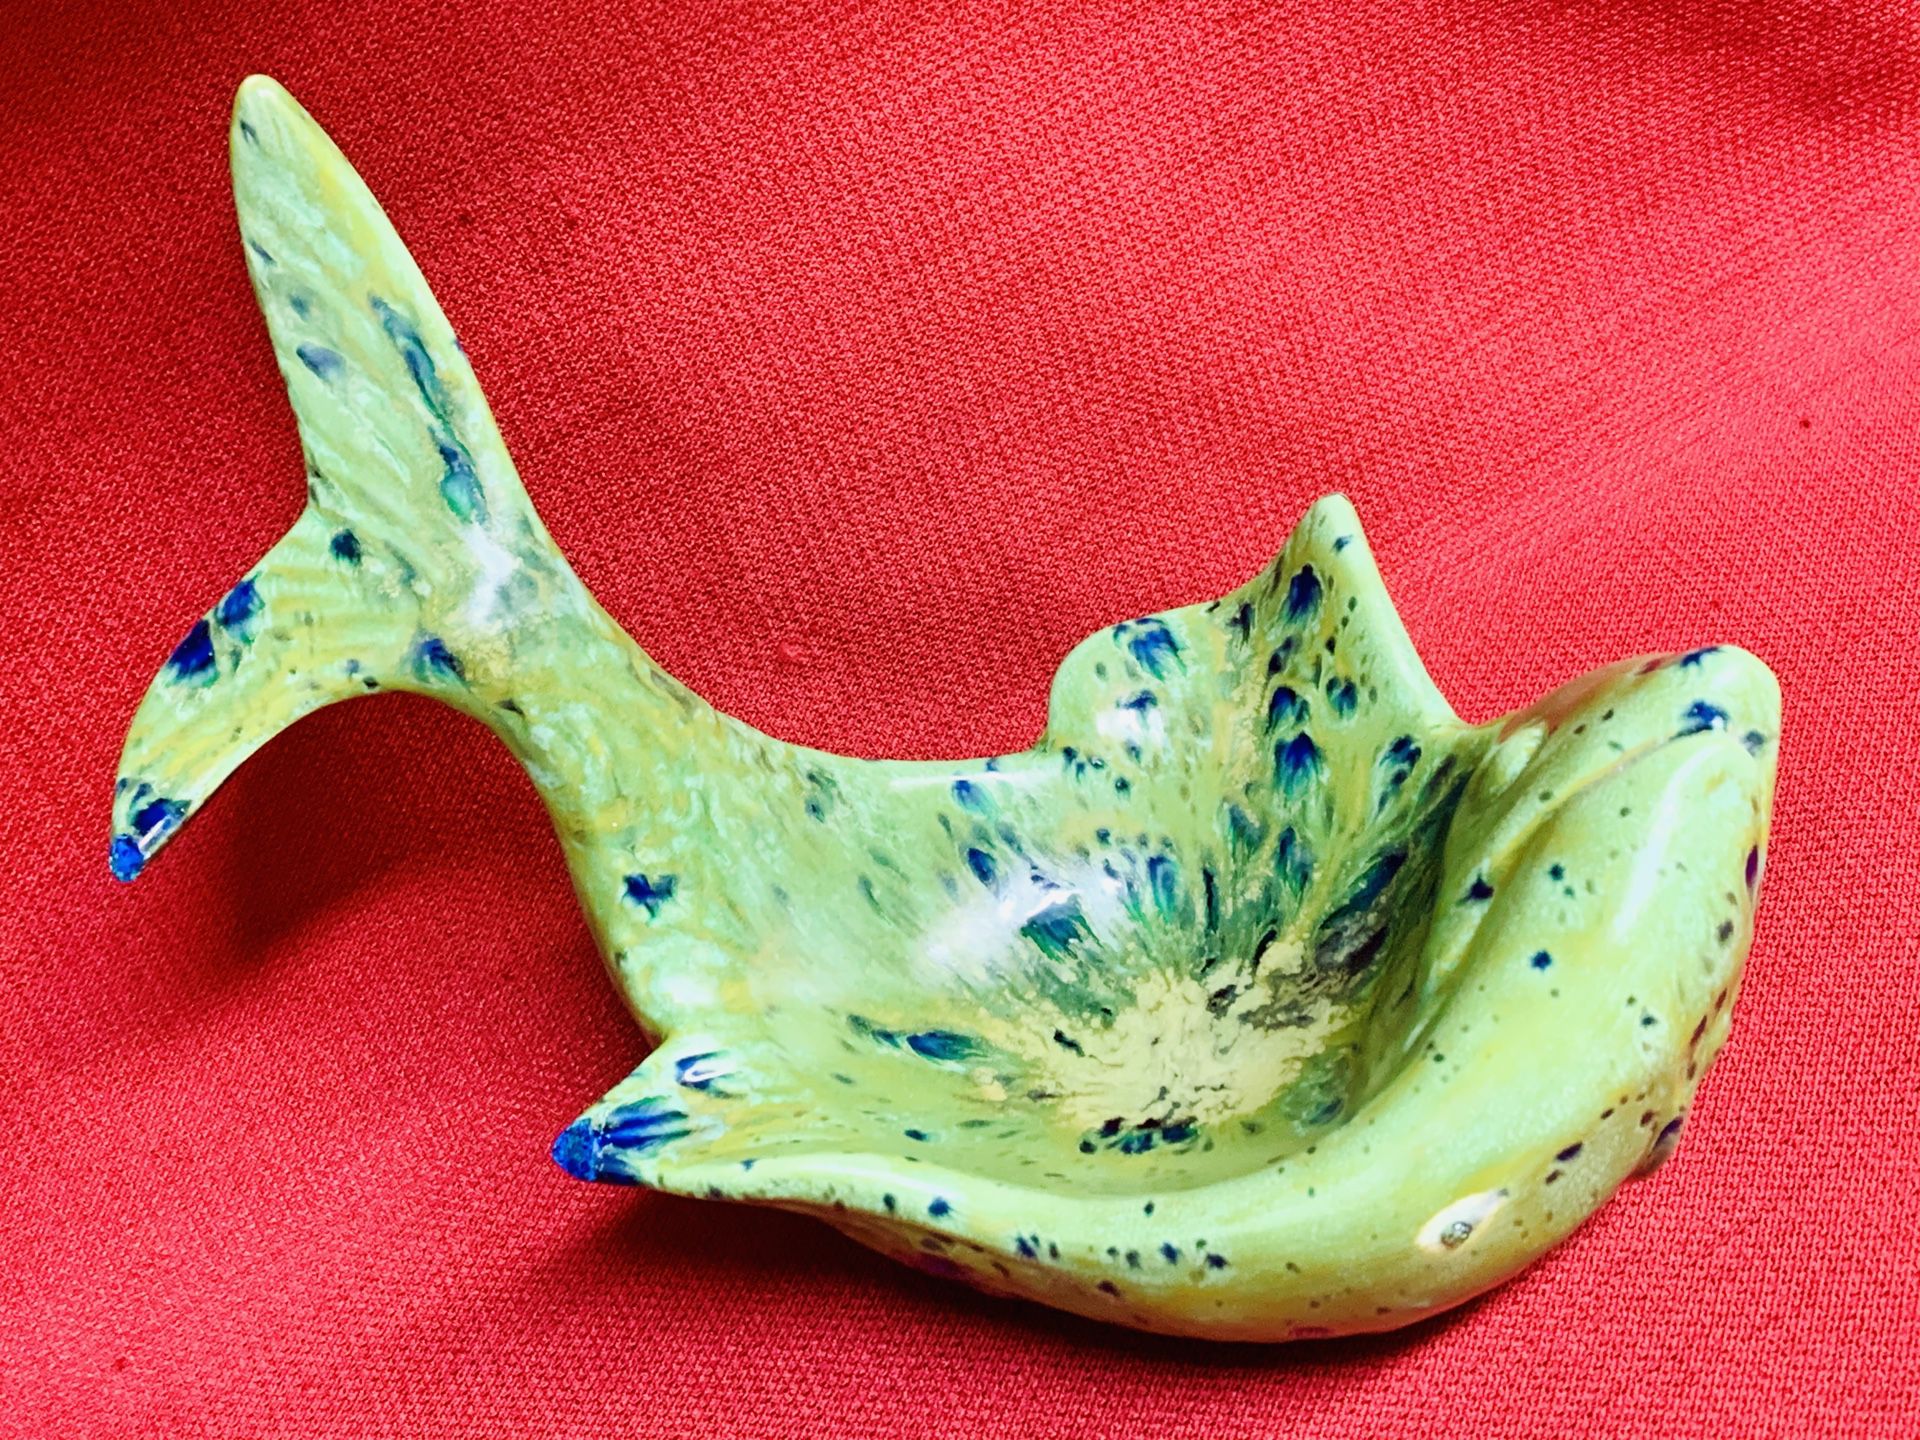 Green Glazed Ceramic Fish Soap Dish Fisherman Enthusiast 9”x 5 1/2”x 7 1/2”tall